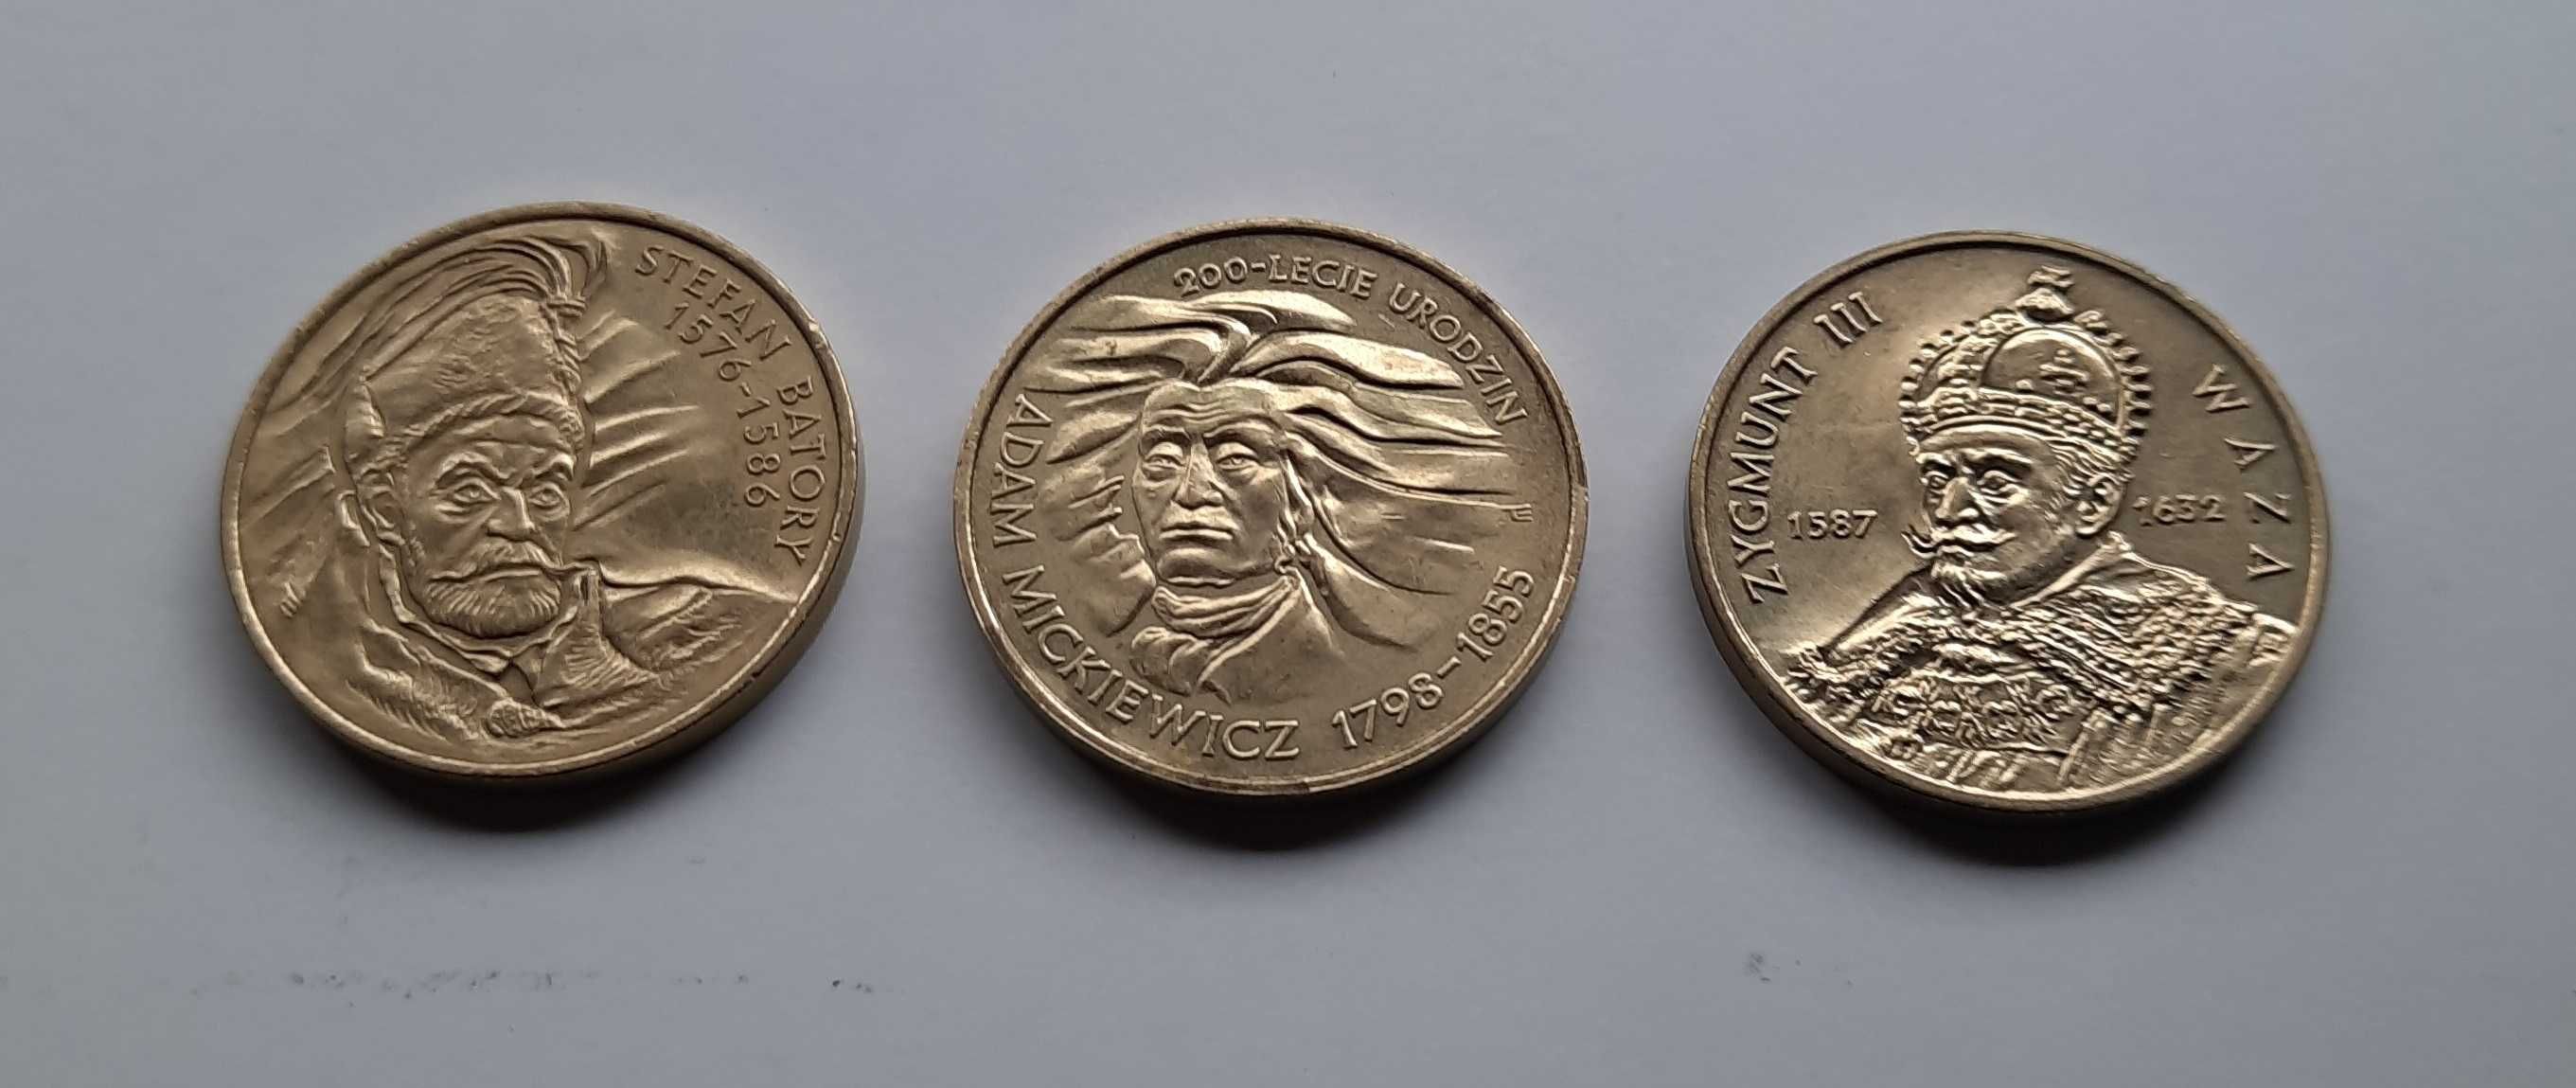 2zł GN 1997 i 1998r. - zestaw 3 monet